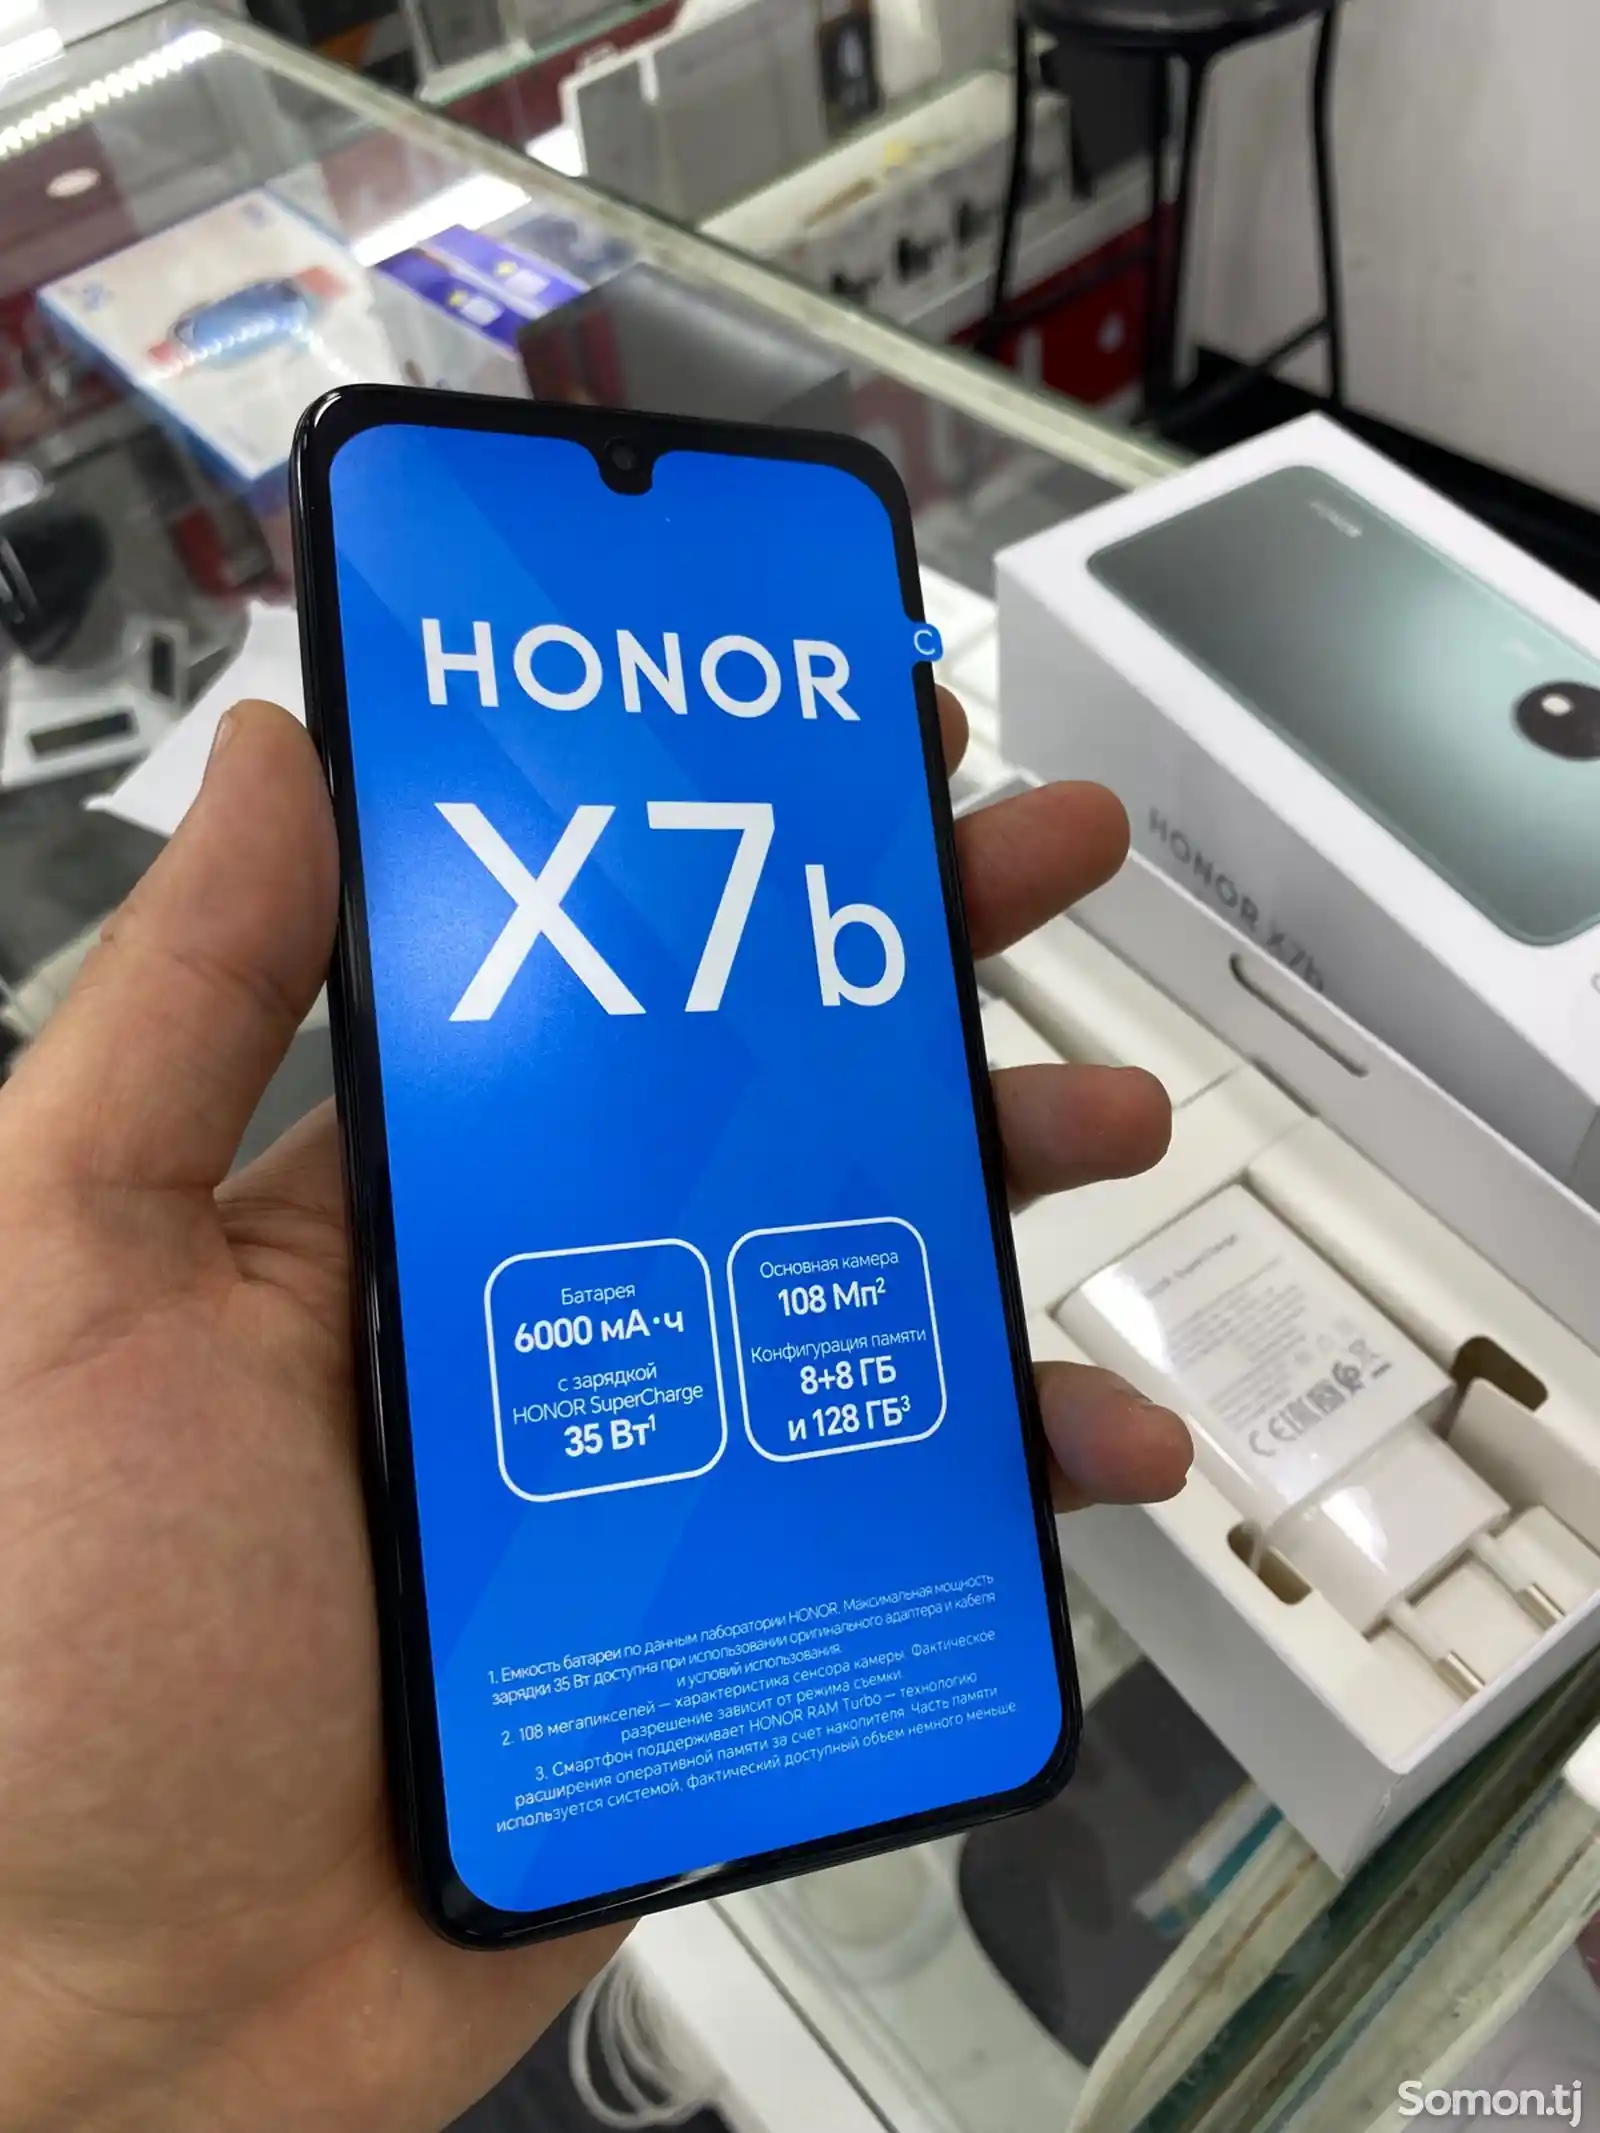 Honor x7b-3